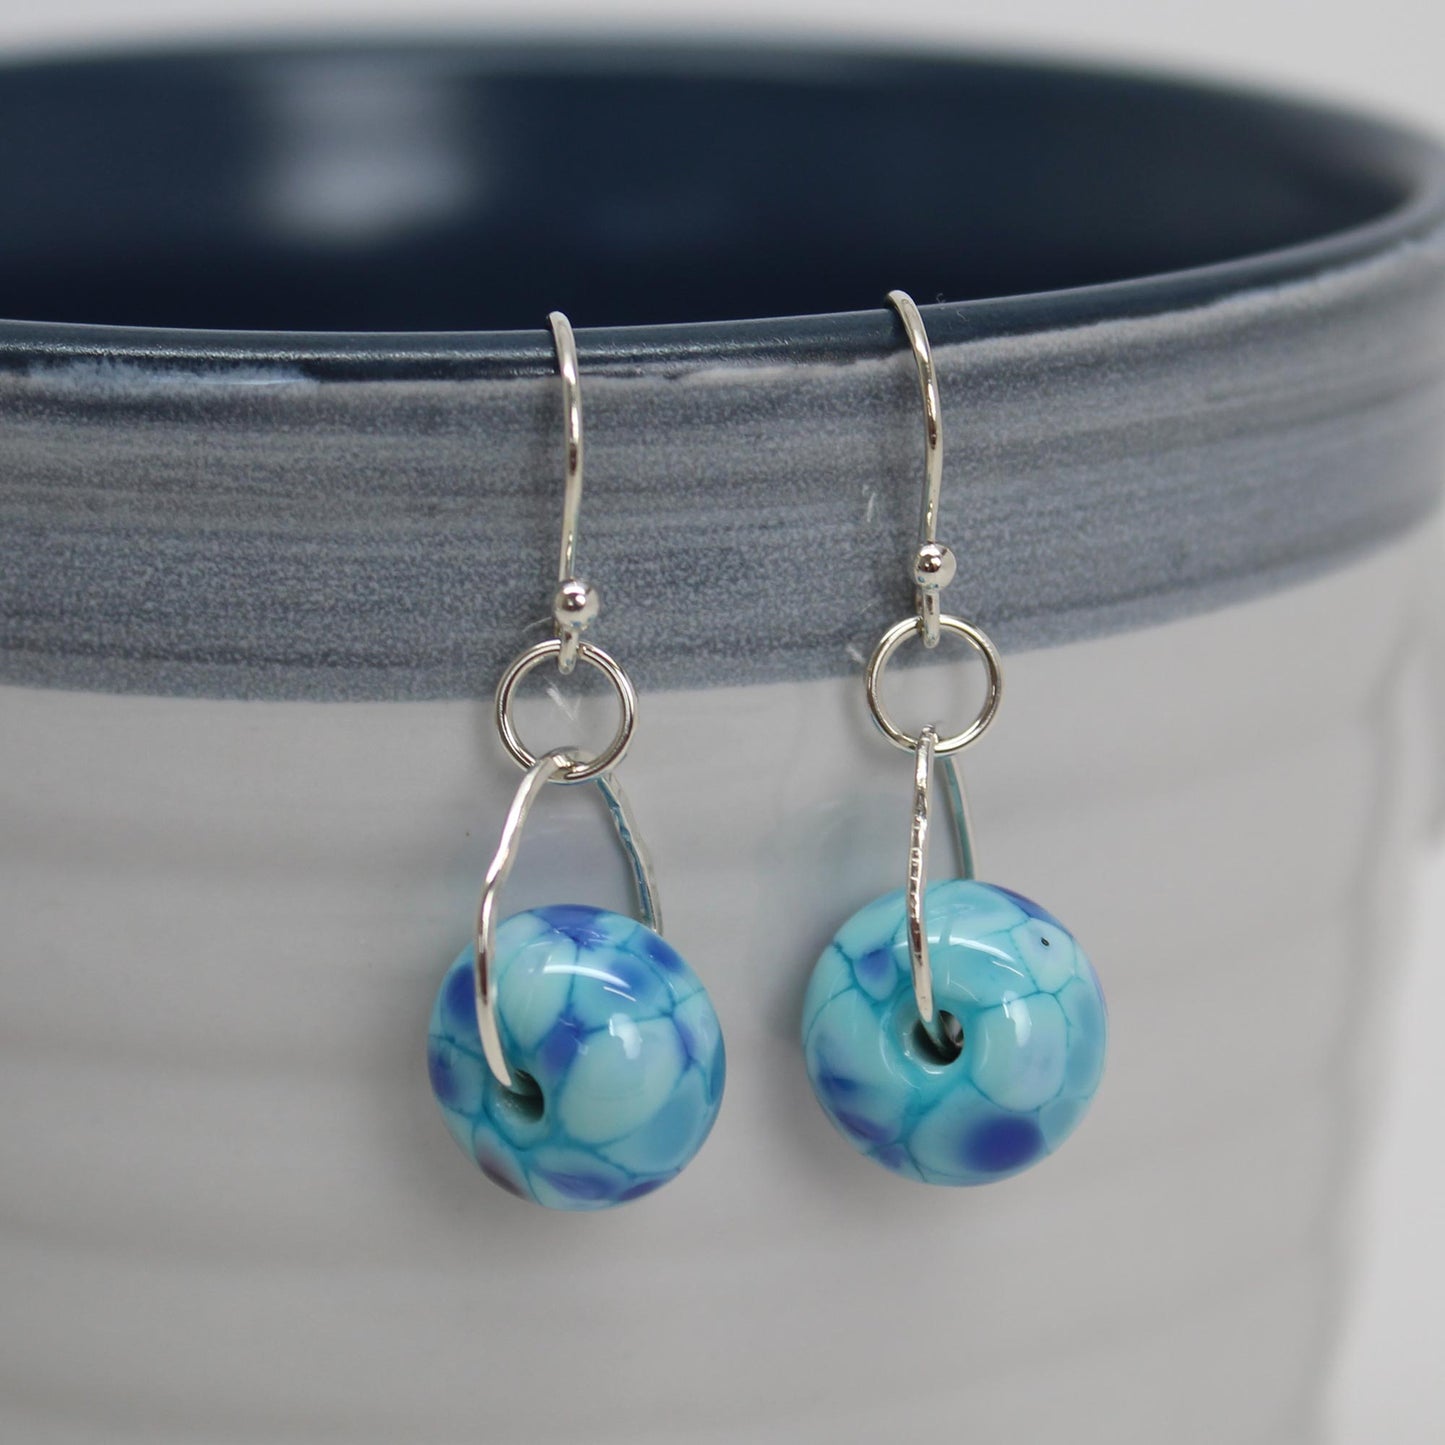 Little Blue Lampwork Glass Bead Earrings in Sterling Silver – Kathy Bankston